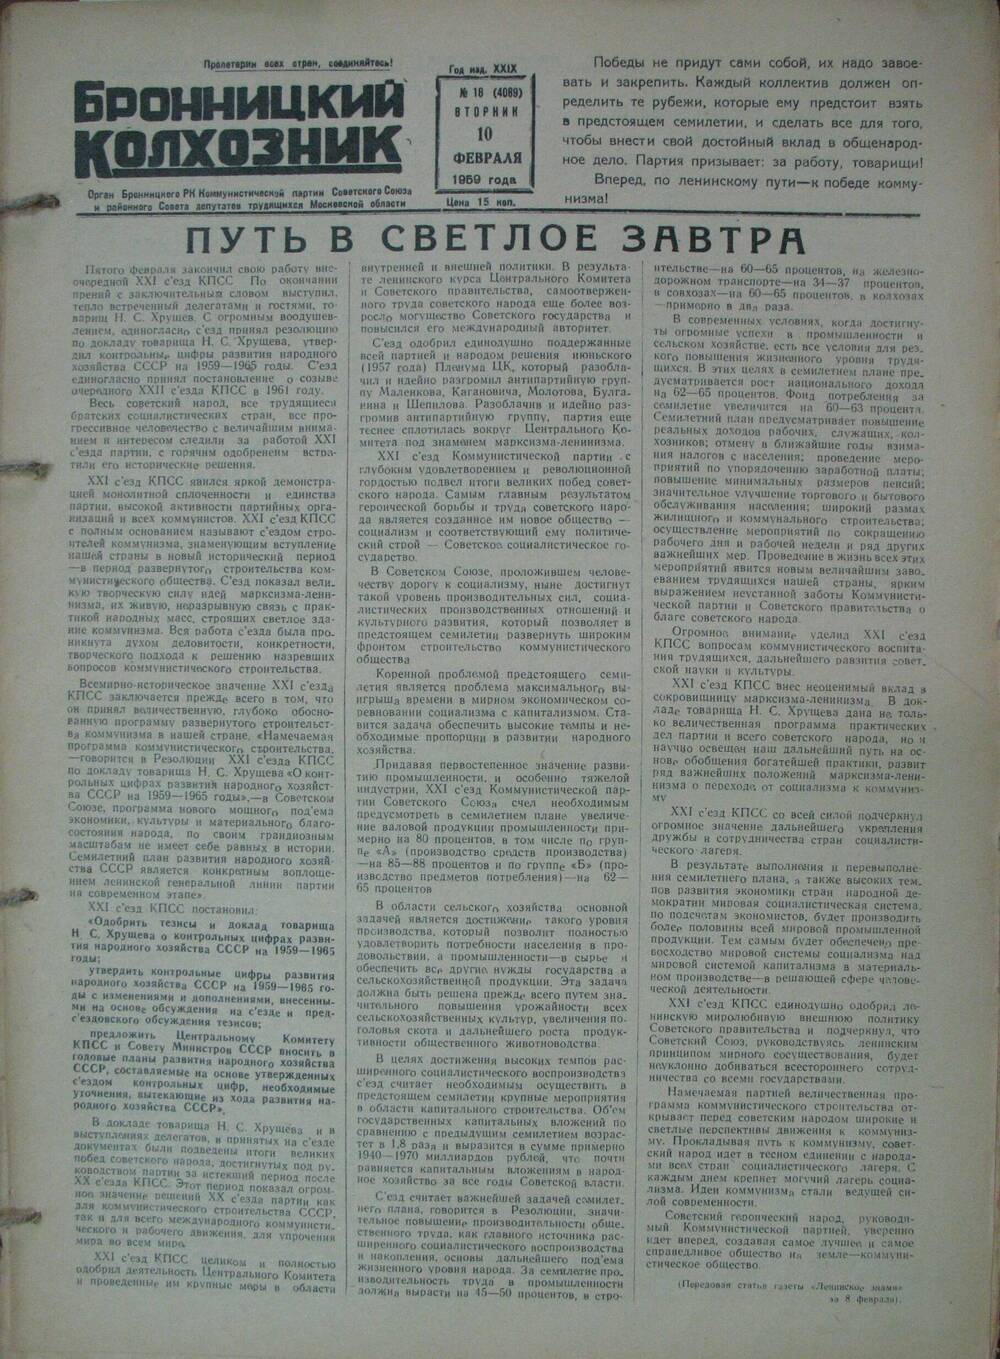 Бронницкий колхозник,  газета № 18 от 10 февраля 1959г